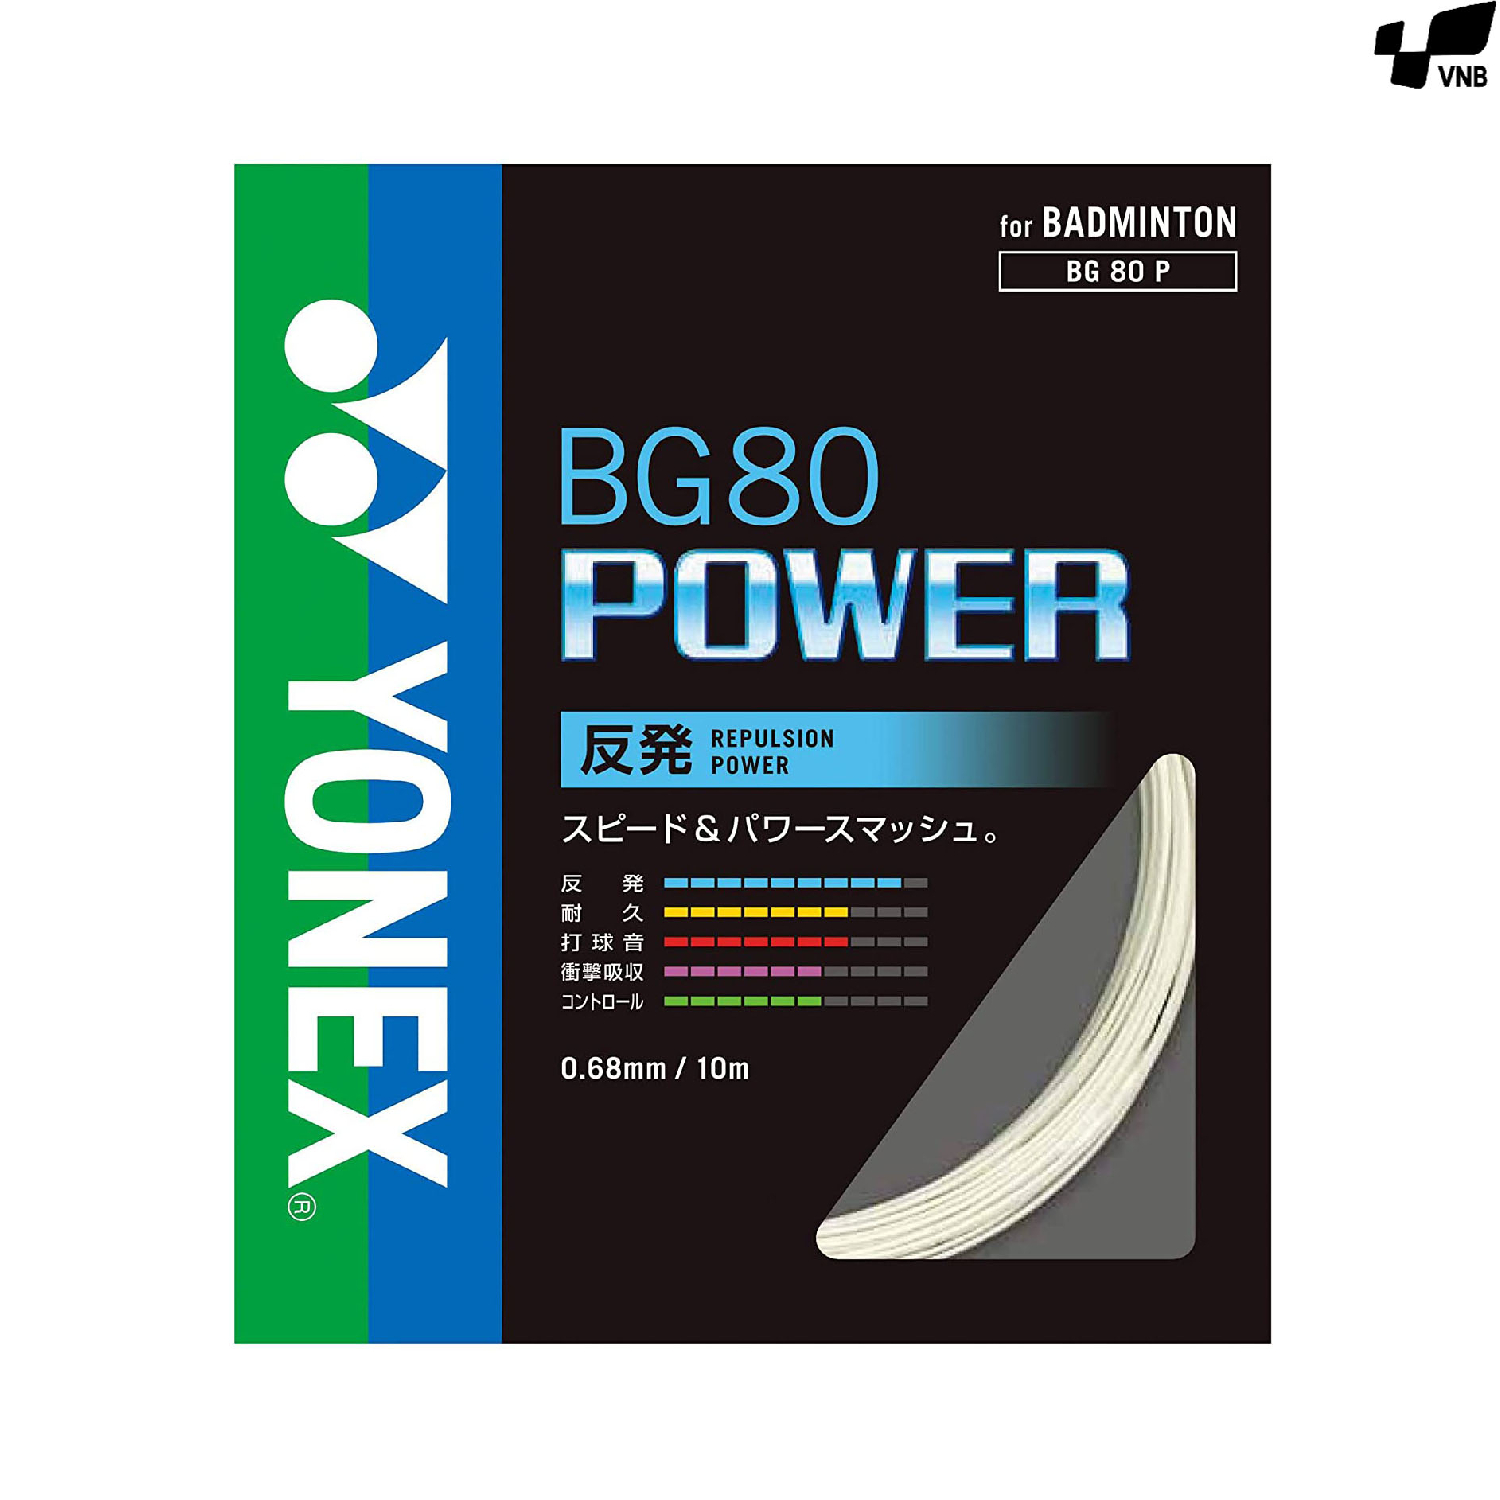 Cước cầu lông nội địa - Yonex BG 80 Power JP